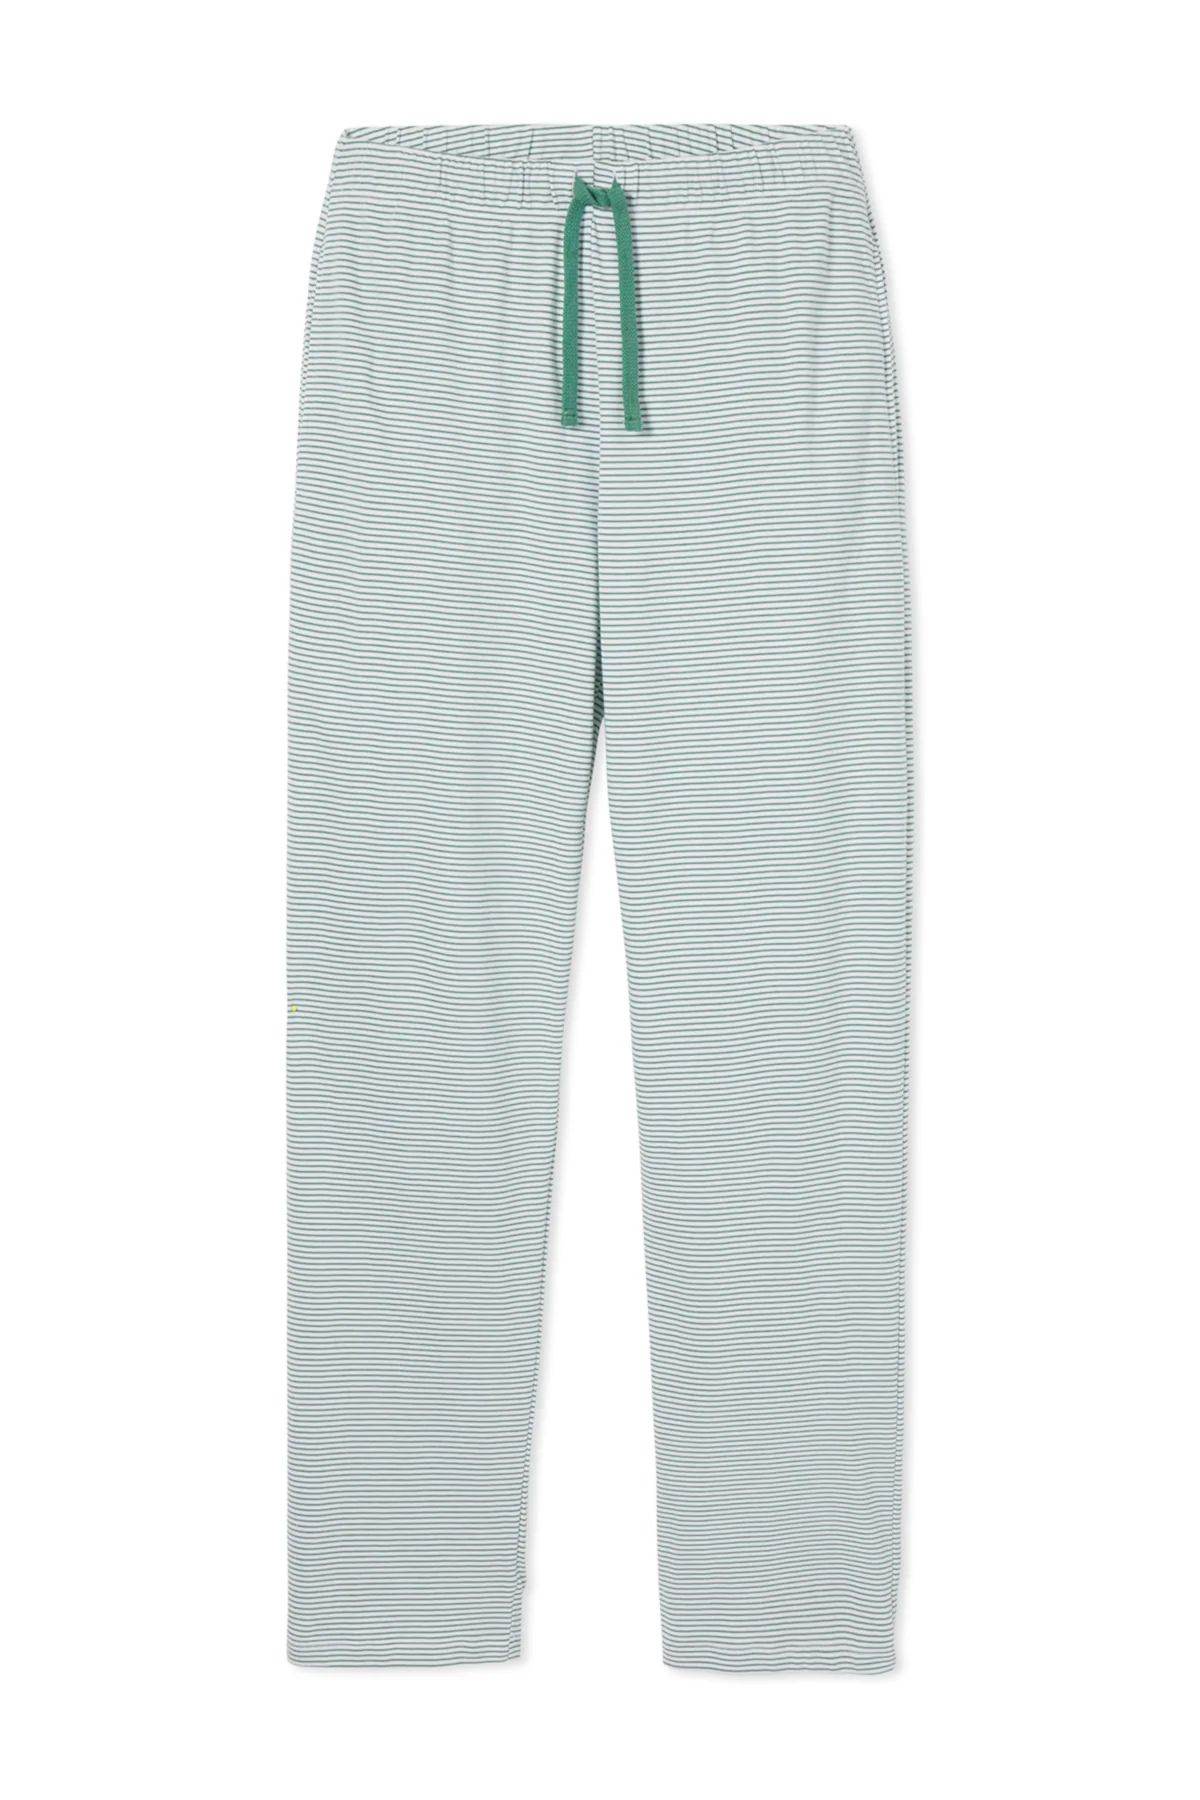 Men's Pima Pajama Pants in Classic Green | Lake Pajamas